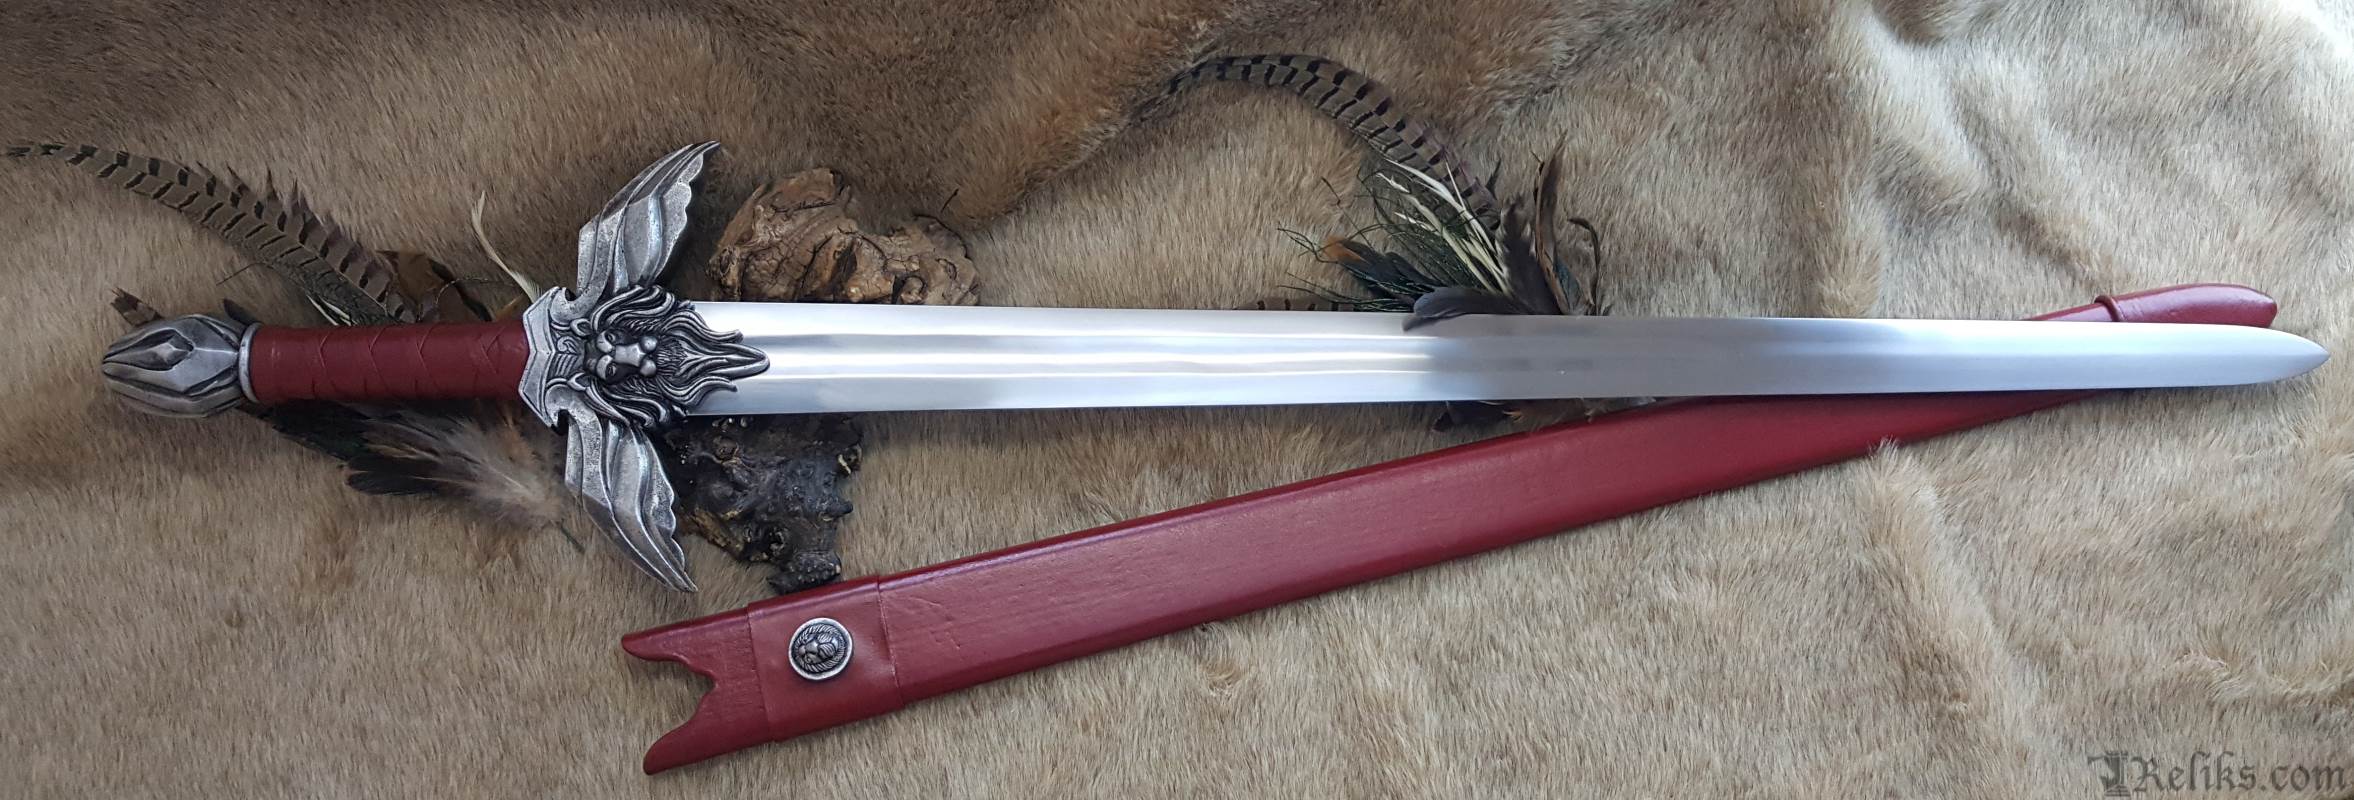 The Sword Of Kings